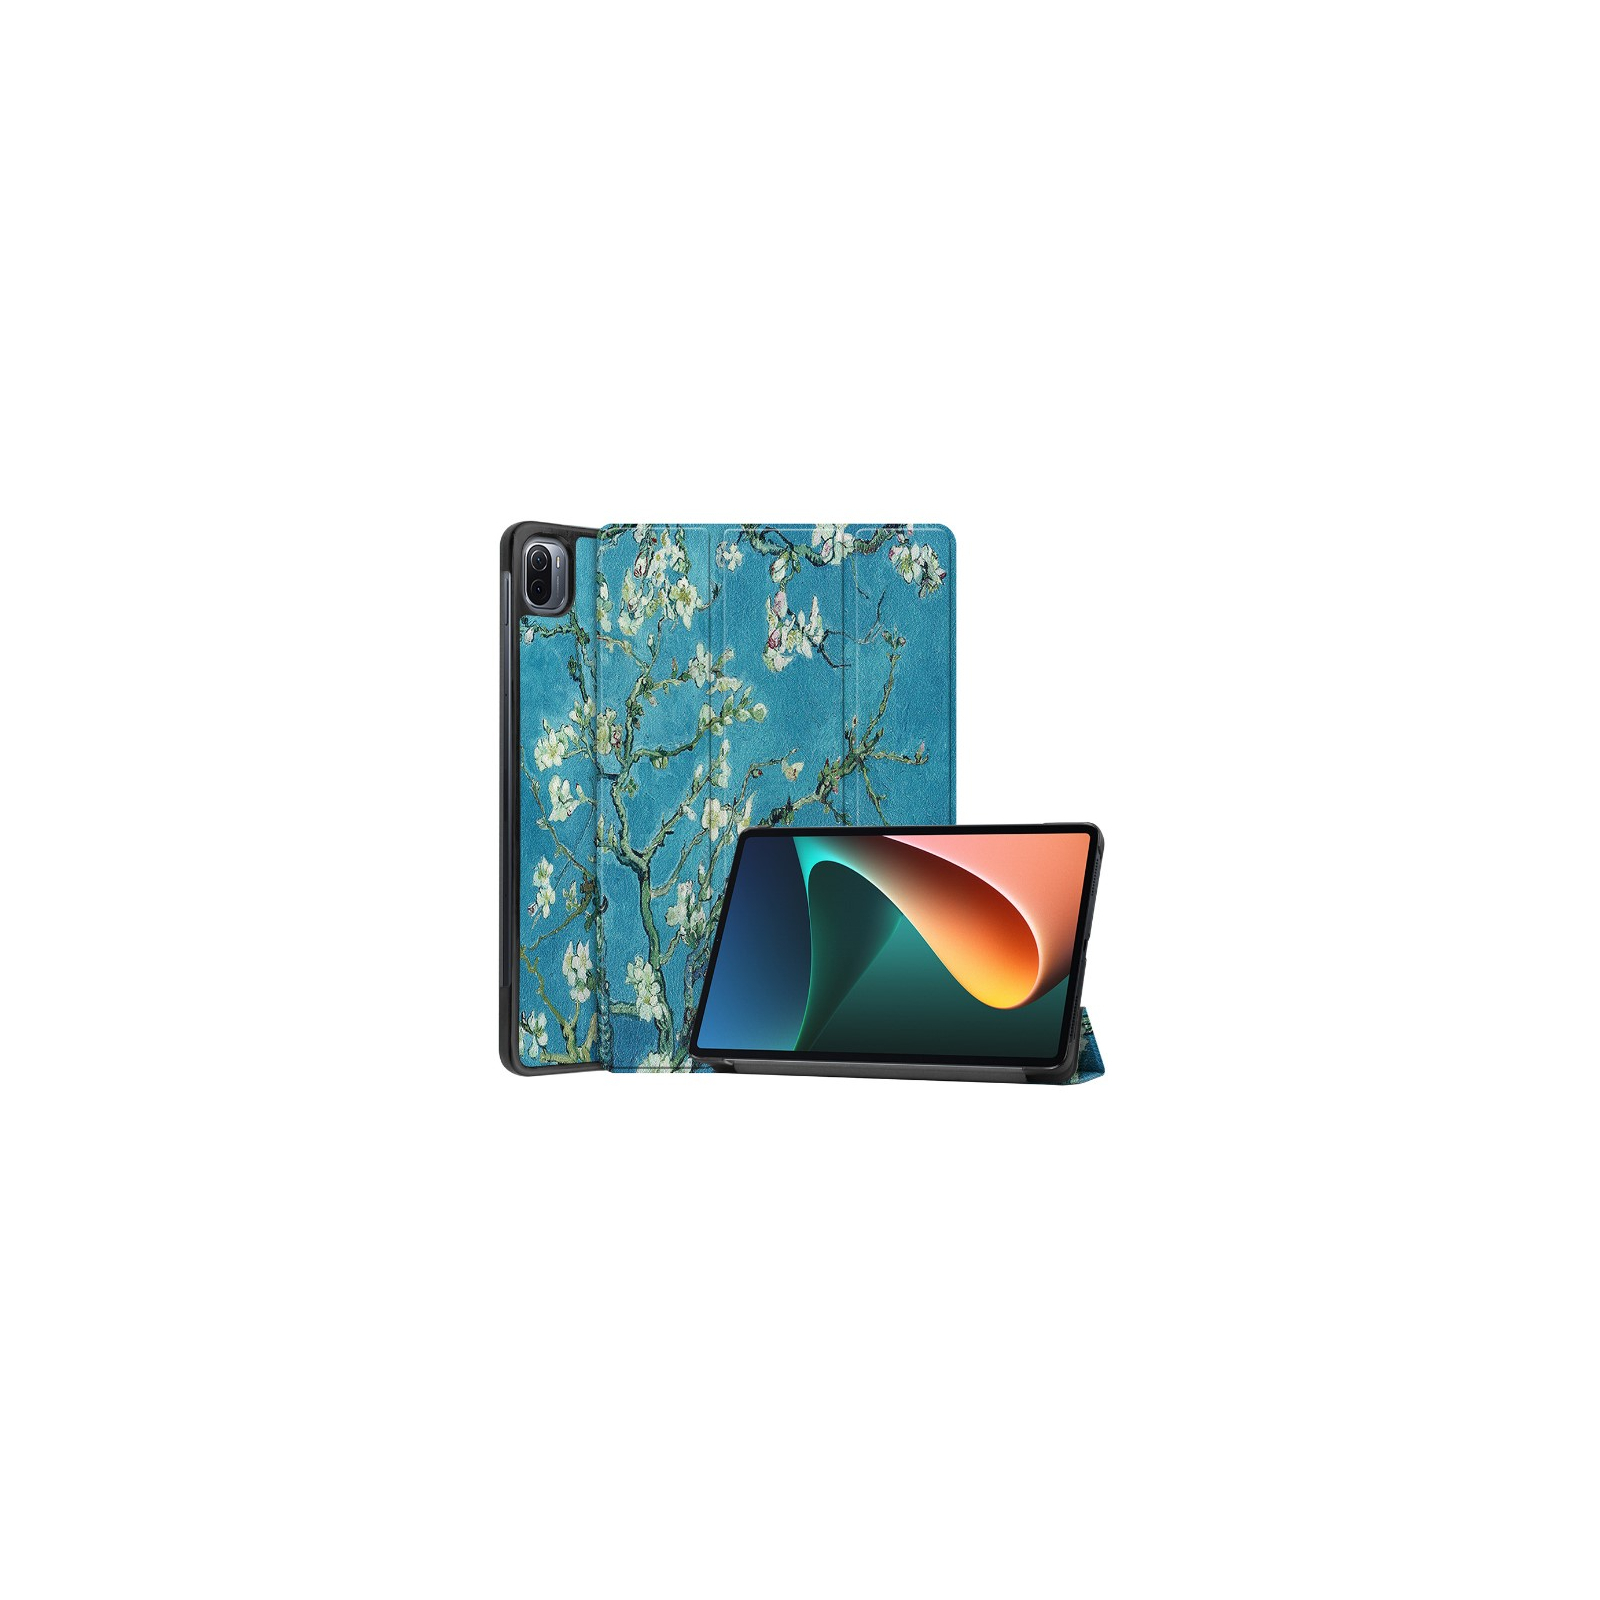 Чехол для планшета BeCover Smart Case Xiaomi Mi Pad 5 / 5 Pro Gray (706706) изображение 2